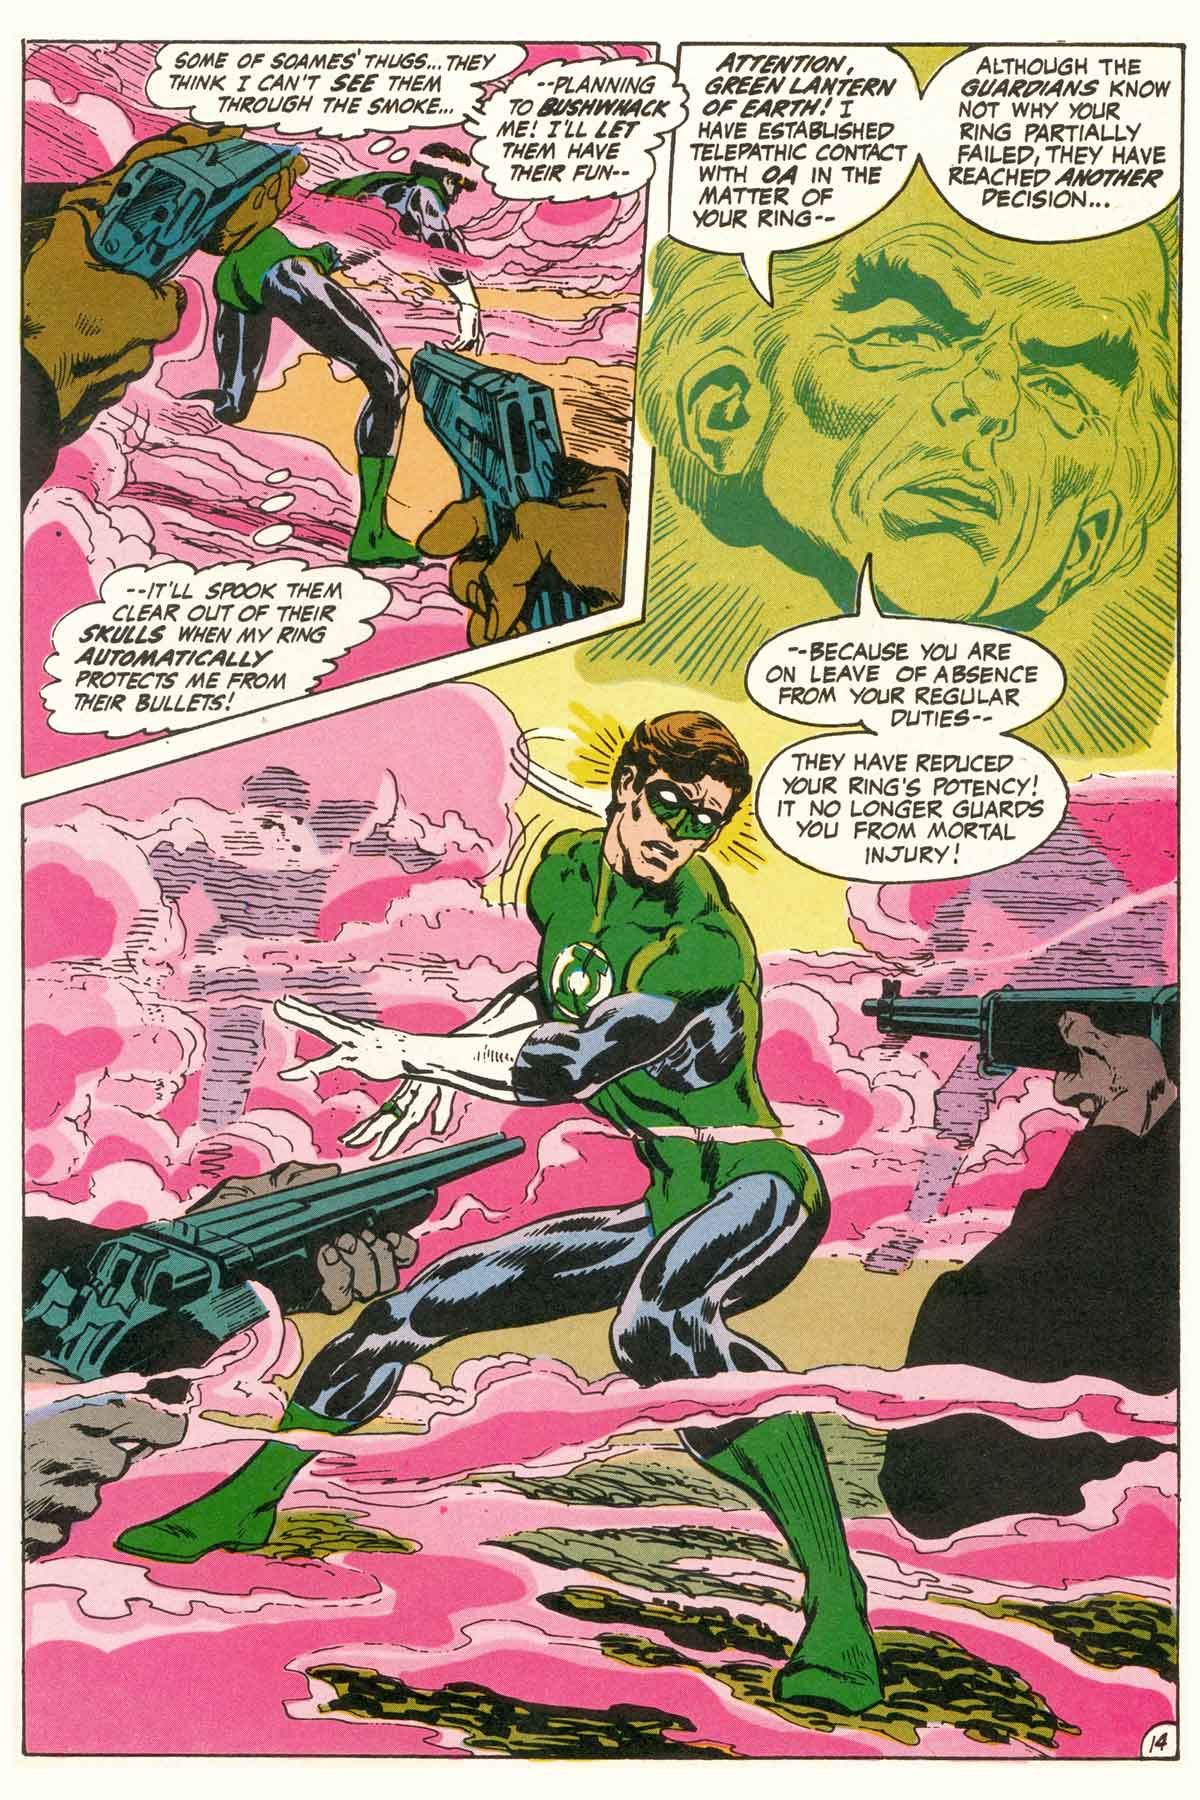 Read online Green Lantern/Green Arrow comic -  Issue #1 - 40